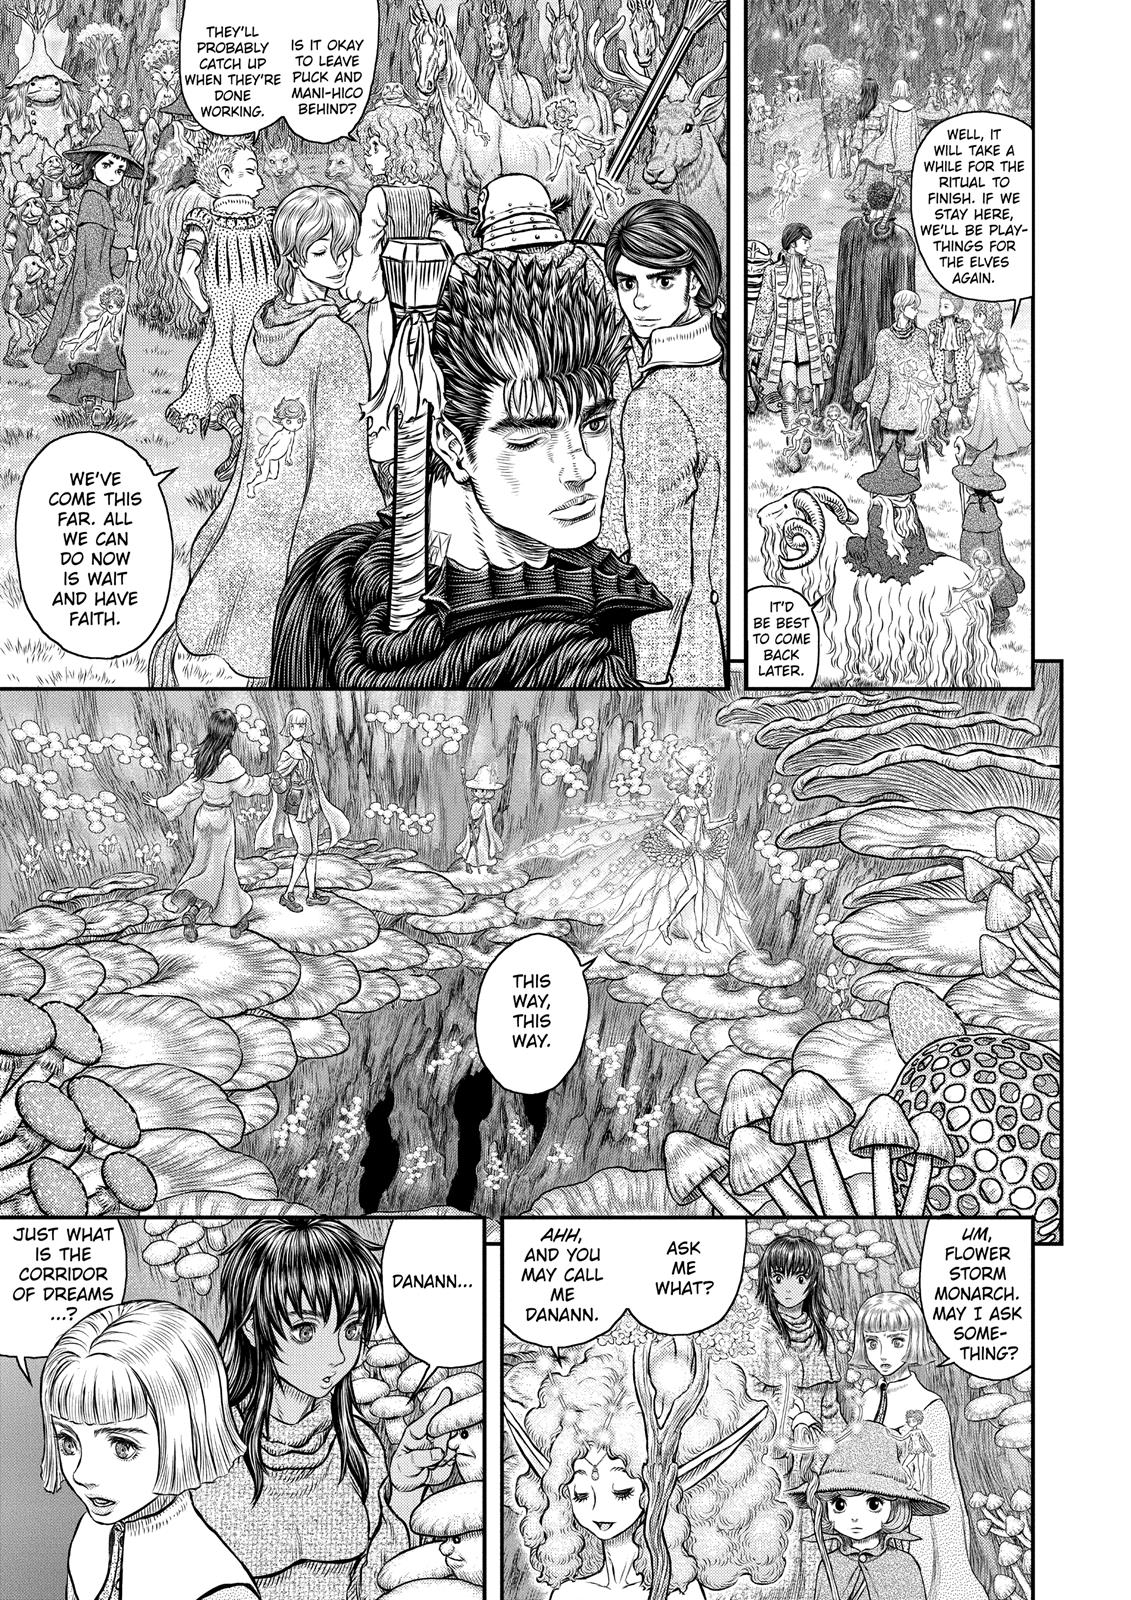 Berserk Manga Chapter 347 image 10